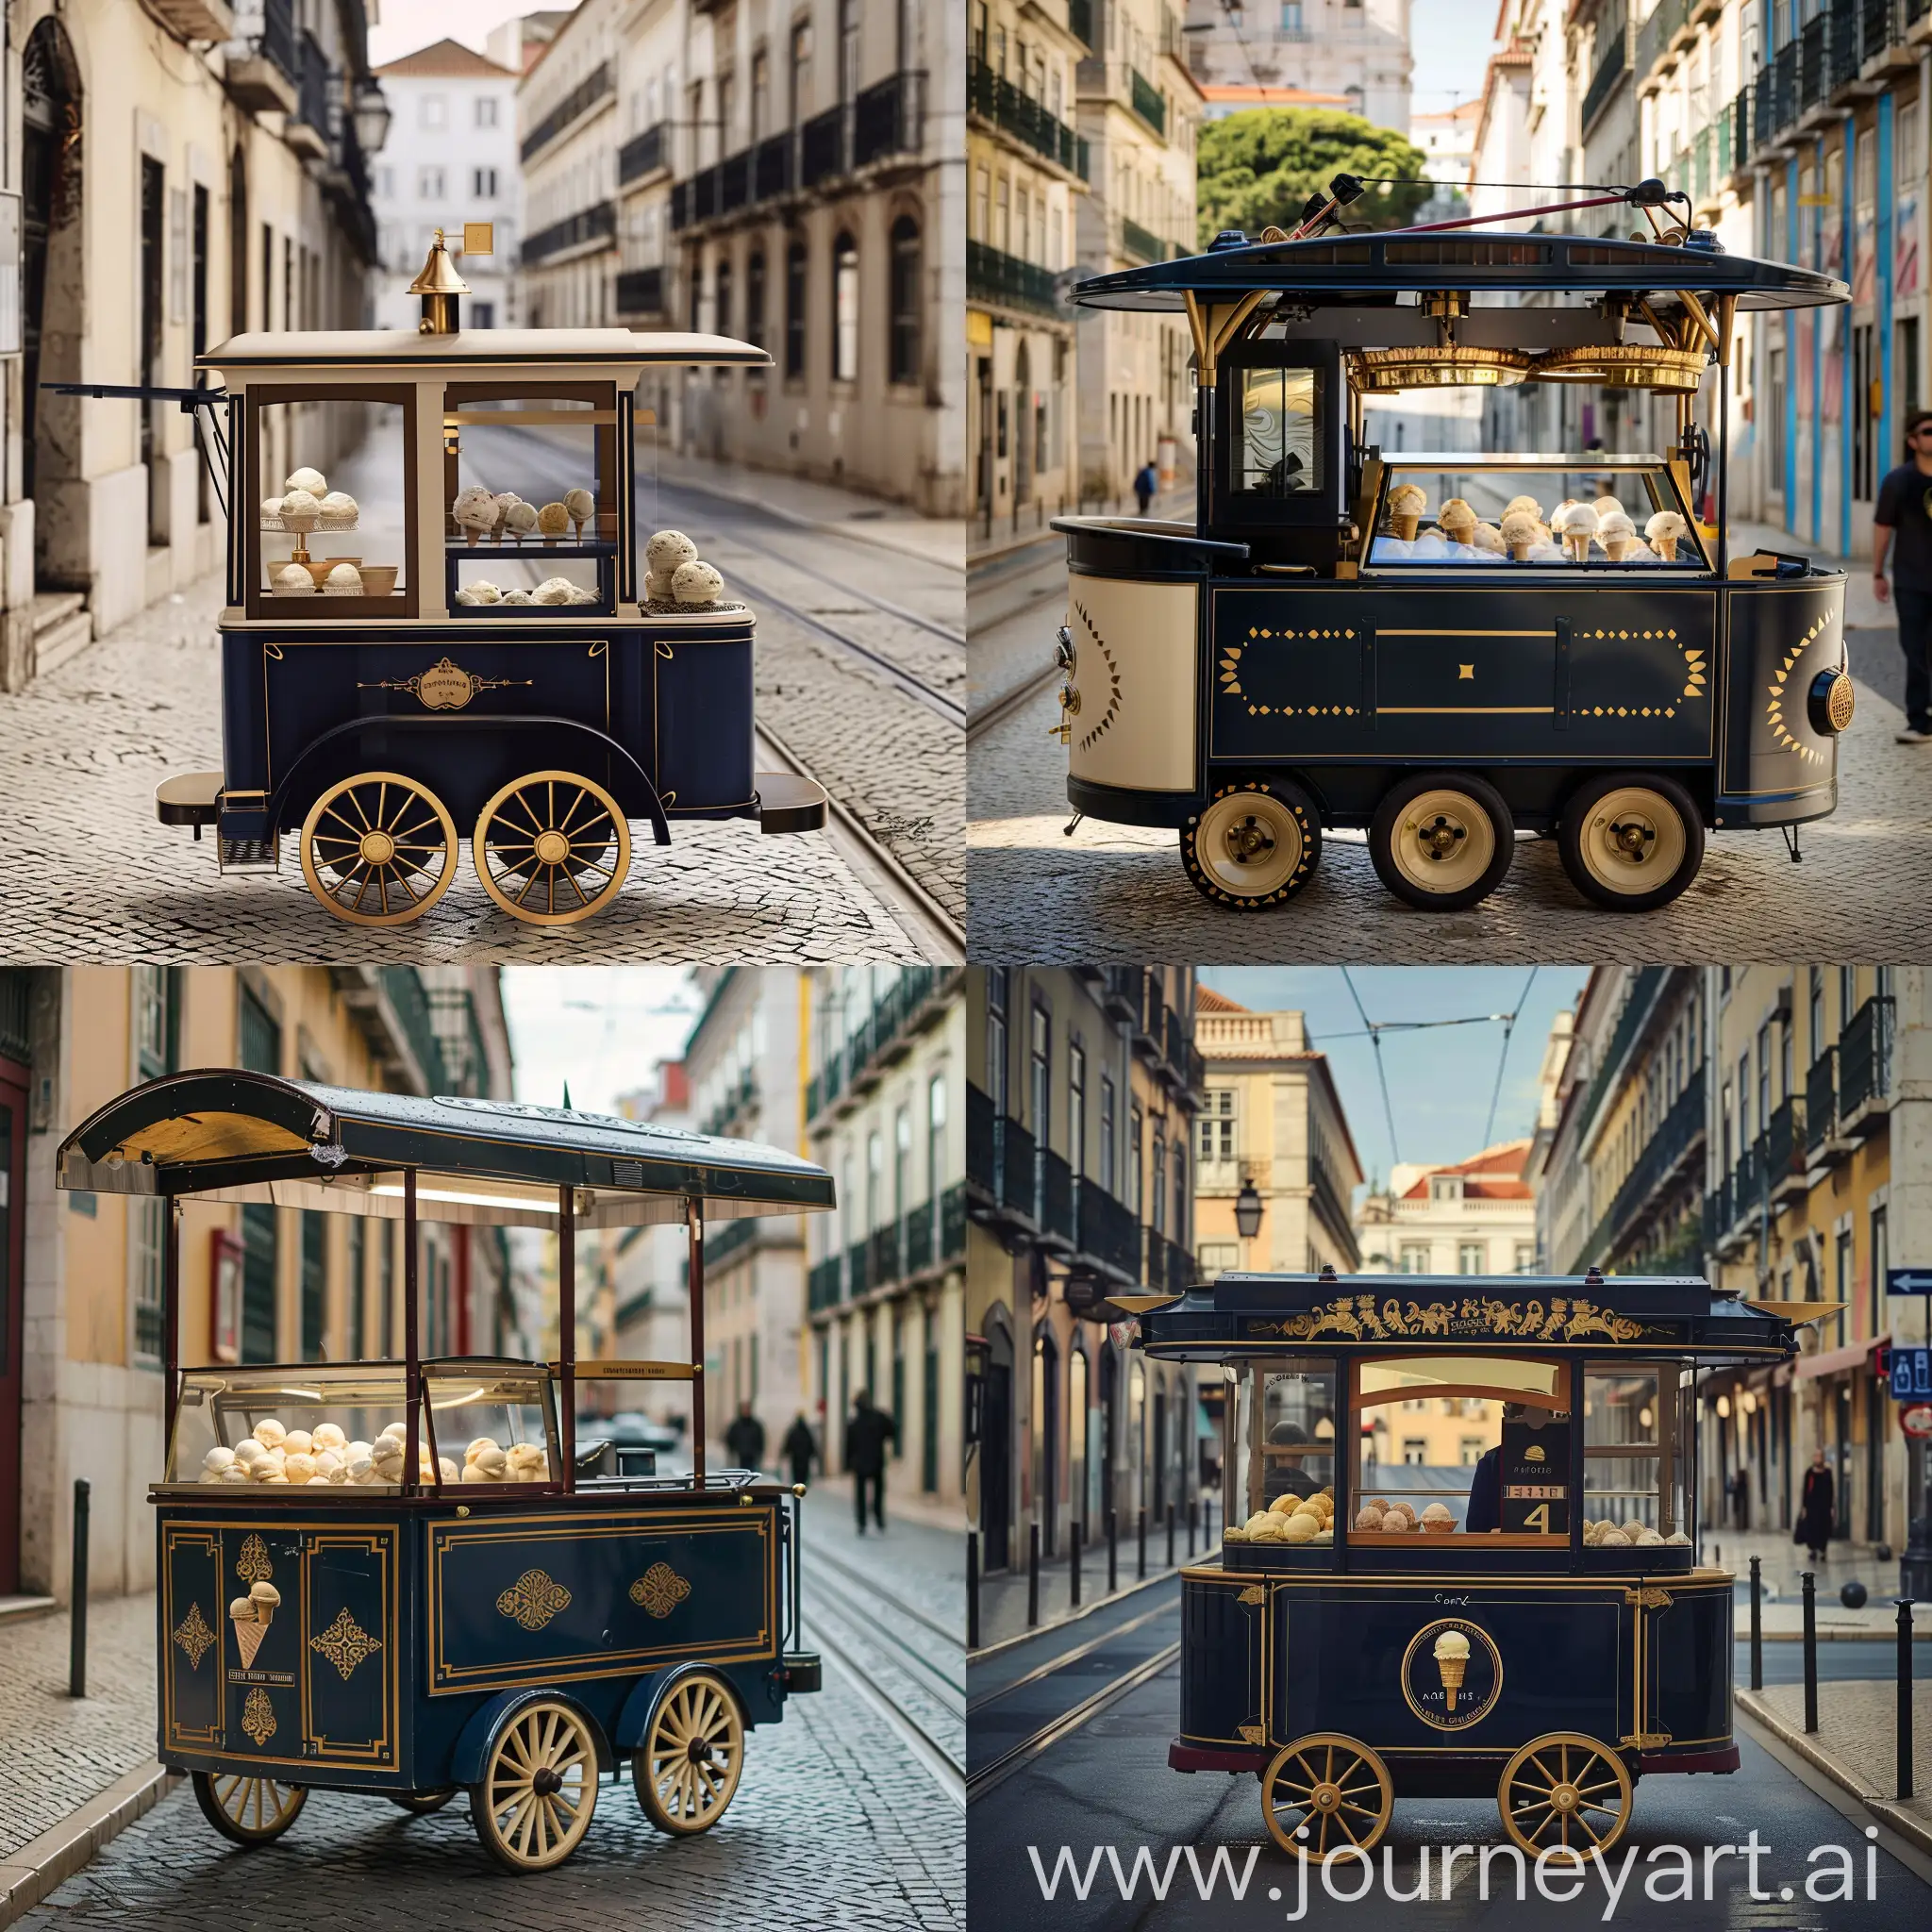 тележка для продажи мороженого на улице, цвет темно синий + золото+крем, бэкграунд улица лиссабона, стиль старый трамвай